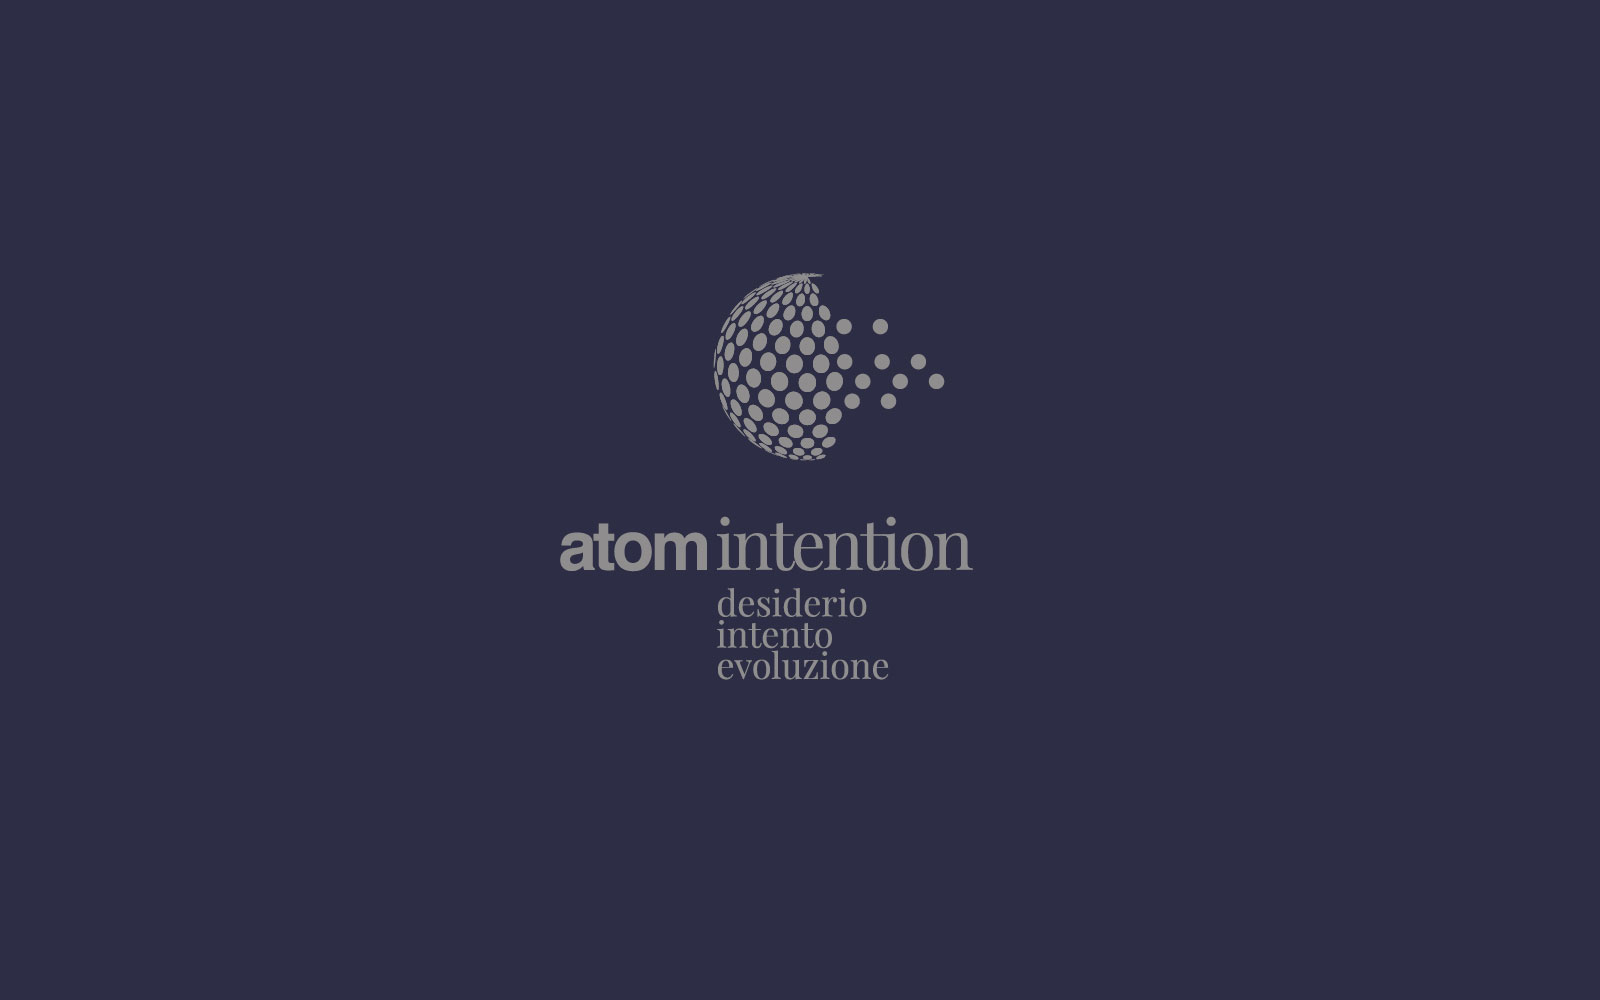 design del logo per azienda di formazione aziendale atom intention. Dettaglio del logo rappresentato in versione negativa. Design diadestudio arco di trento